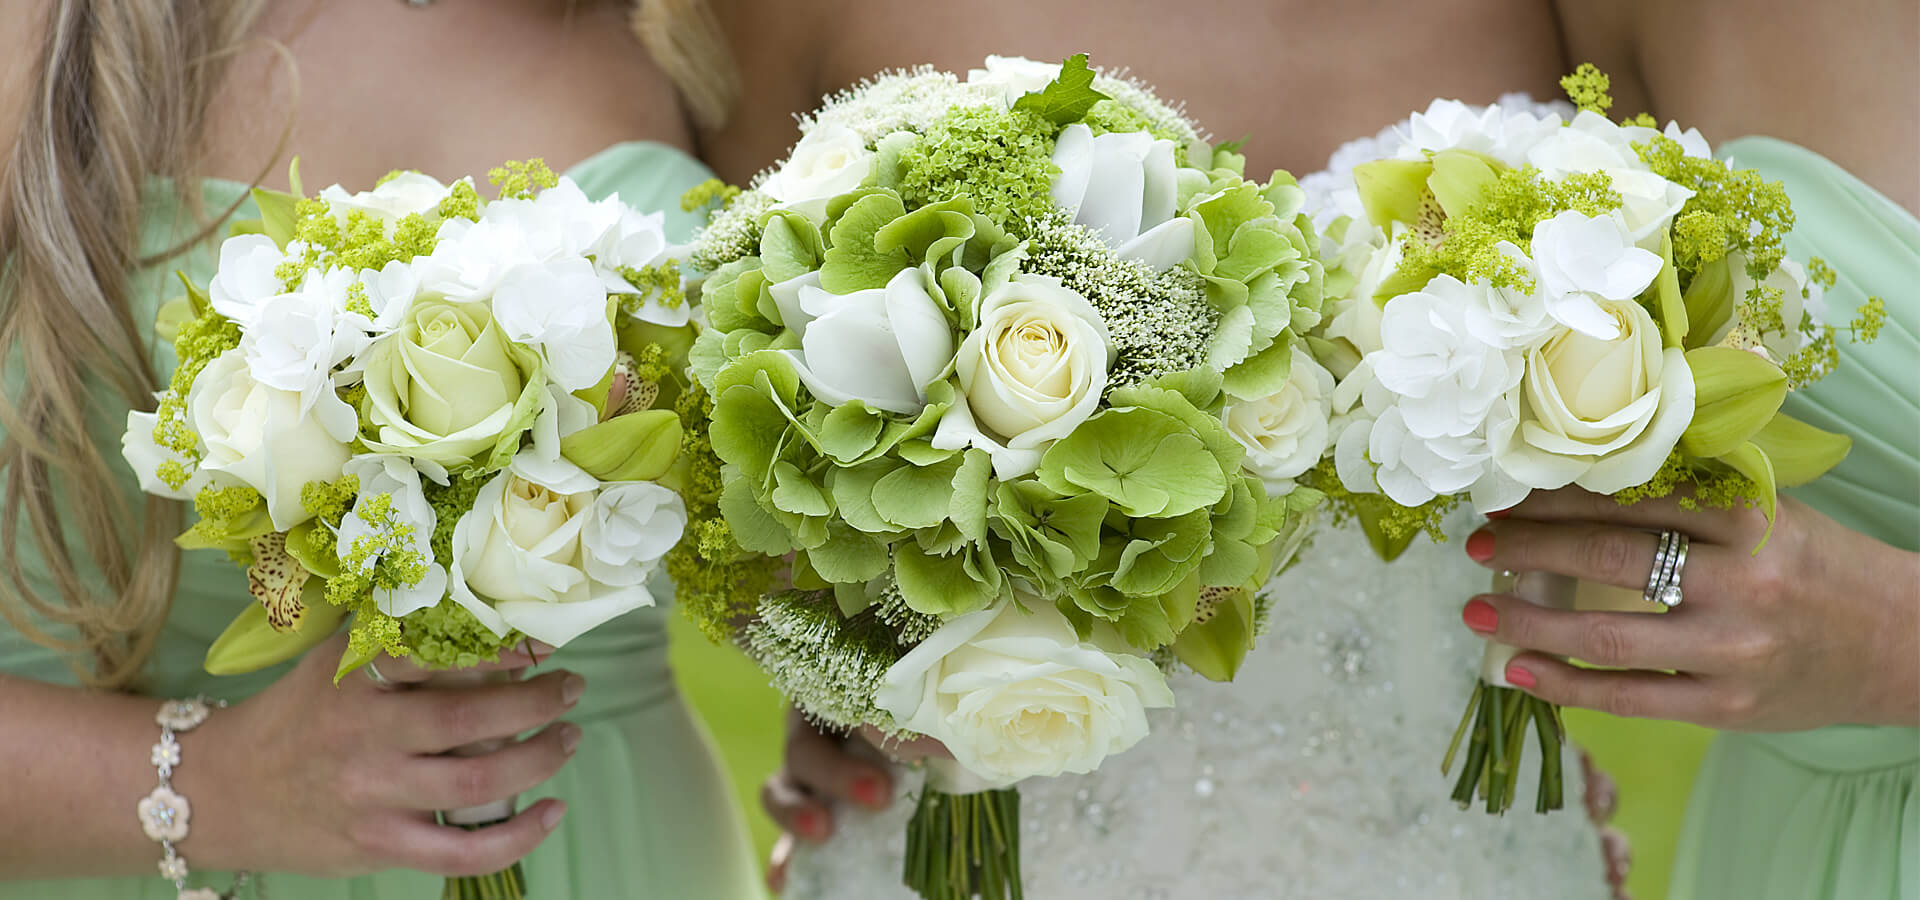 Свадьба в зеленом цвете - правила организации